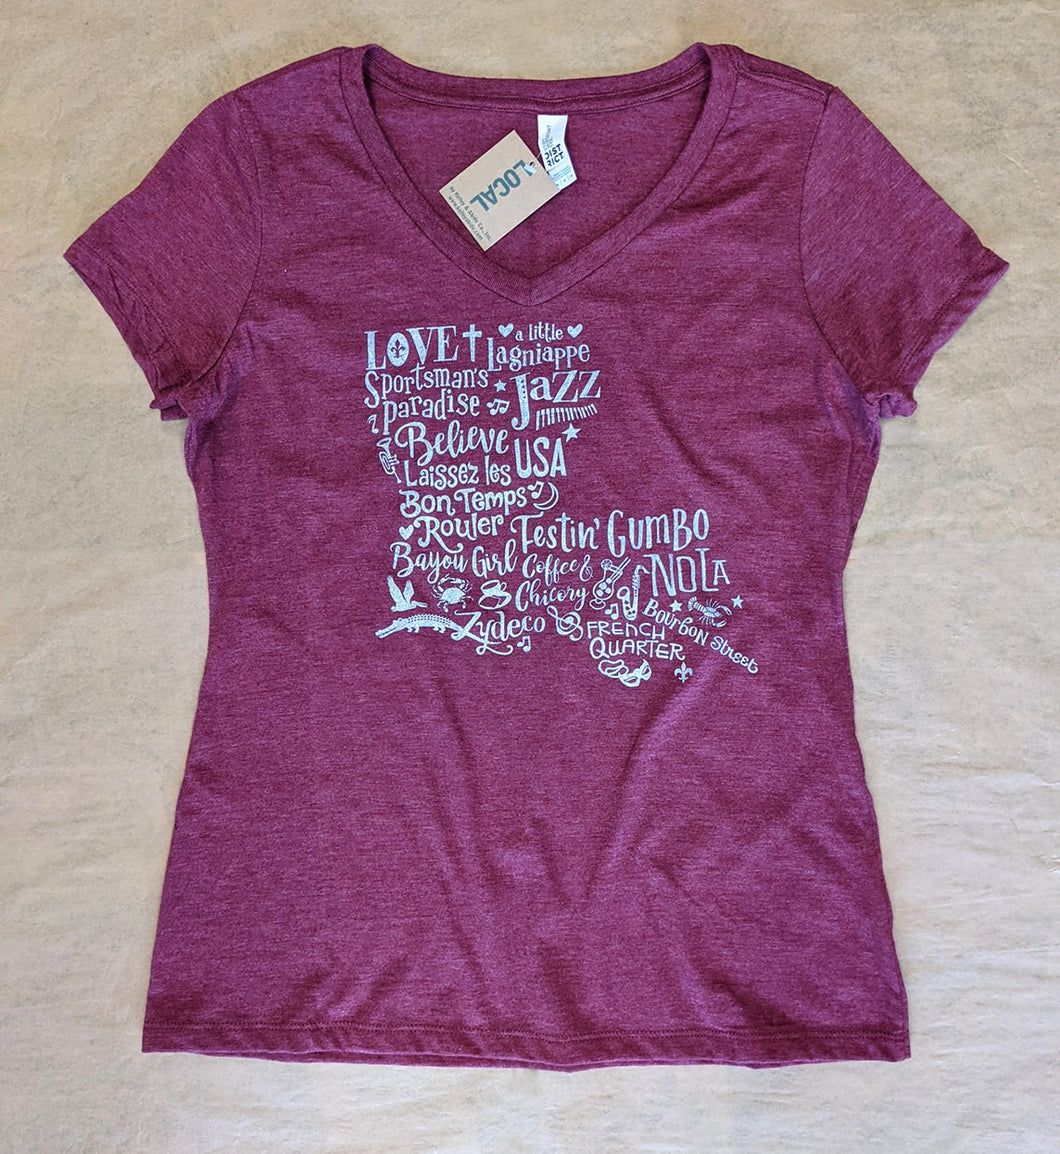 Louisiana Purchase Song Women's T-Shirt